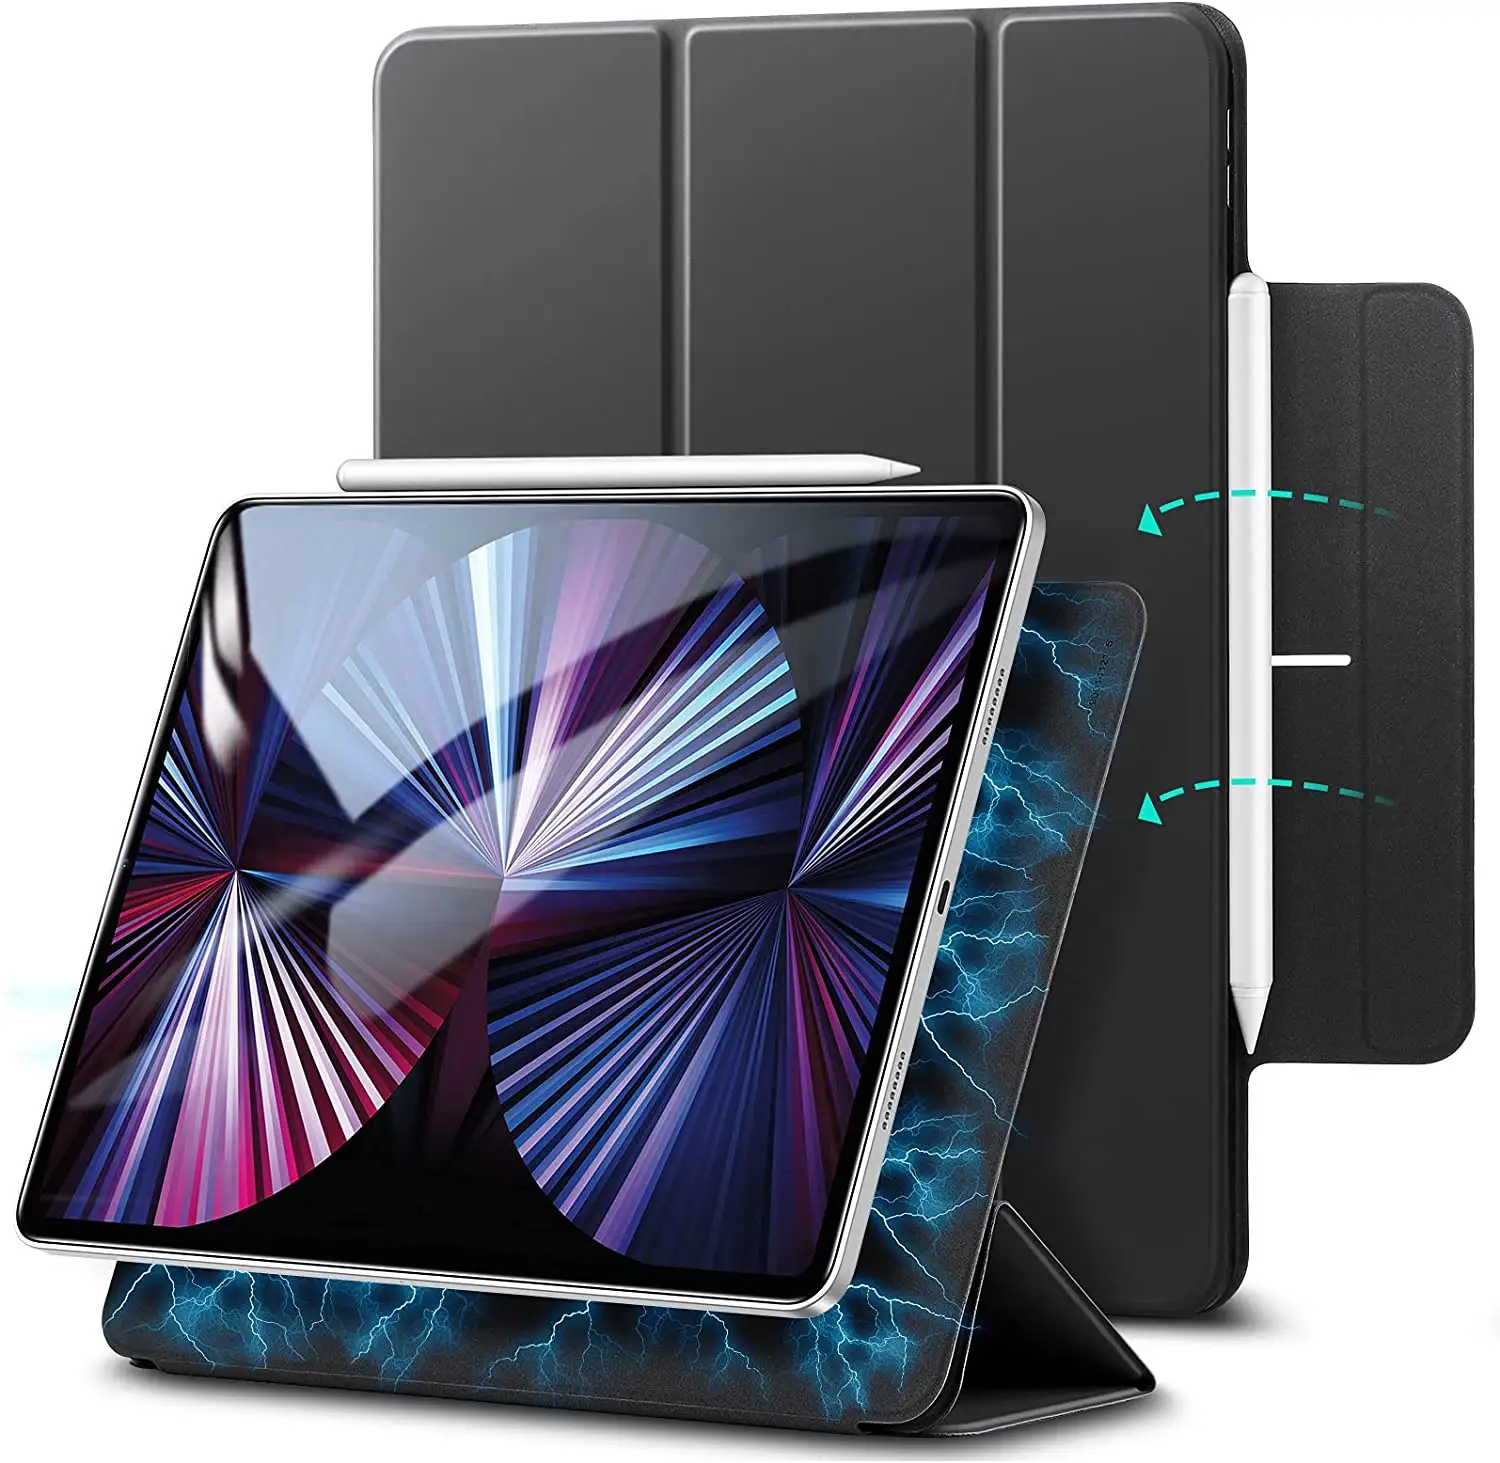 Étui magnétique intelligent pour iPad Pro de 11 pouces, 2021/2020/2018, léger, chargement pour crayon Apple, airsoft